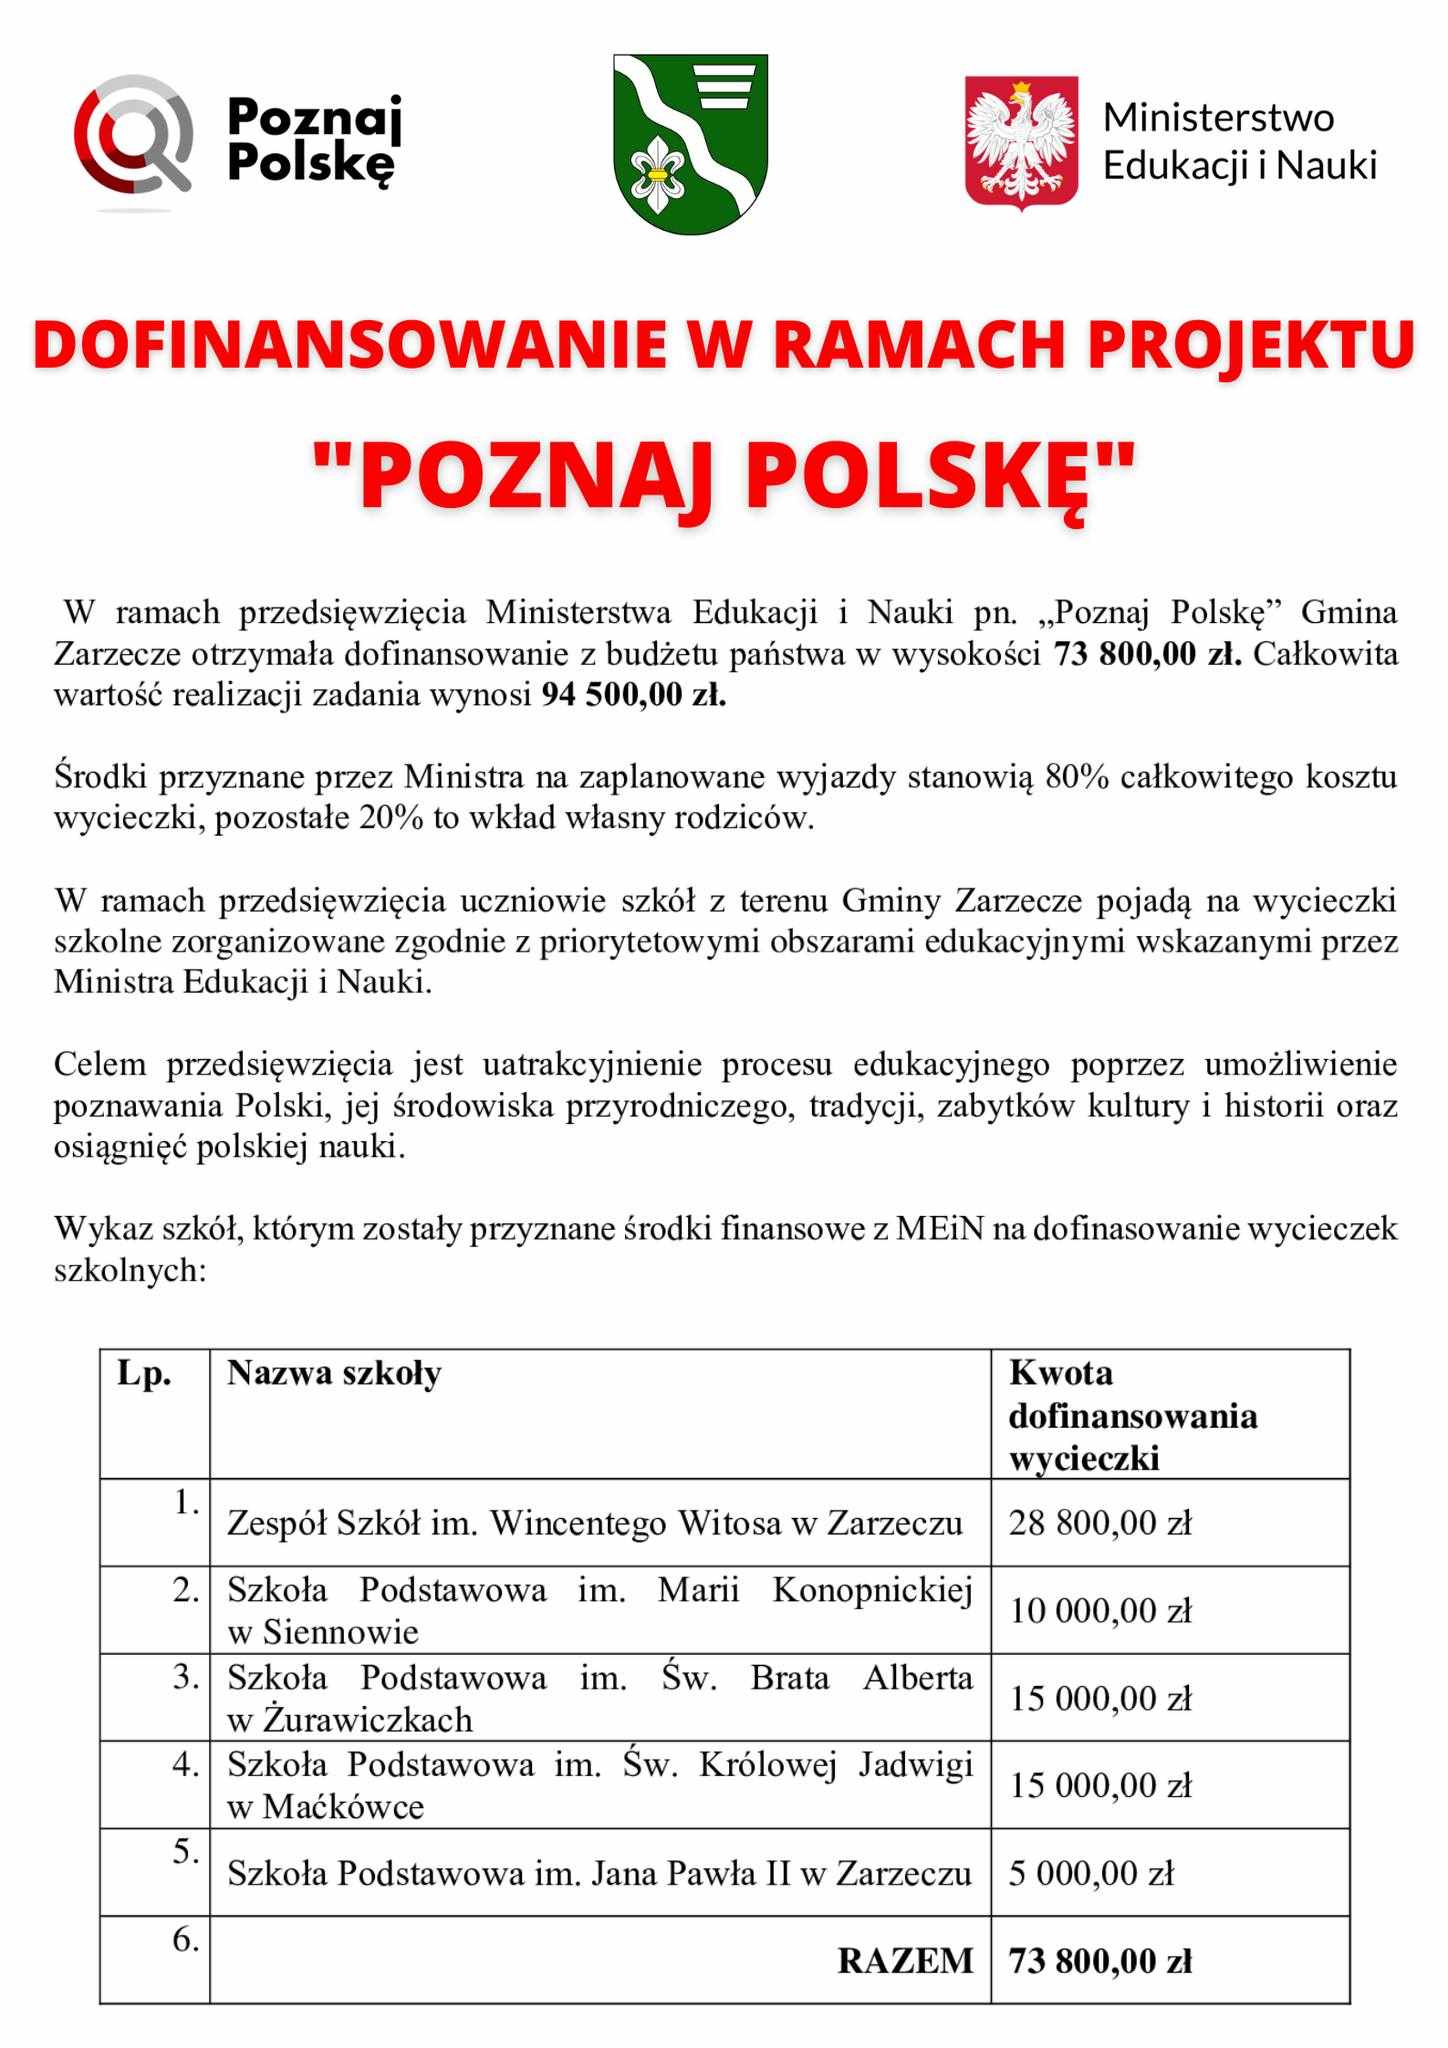 dofinansowanie-w-ramach-projektu-poznaj-polske